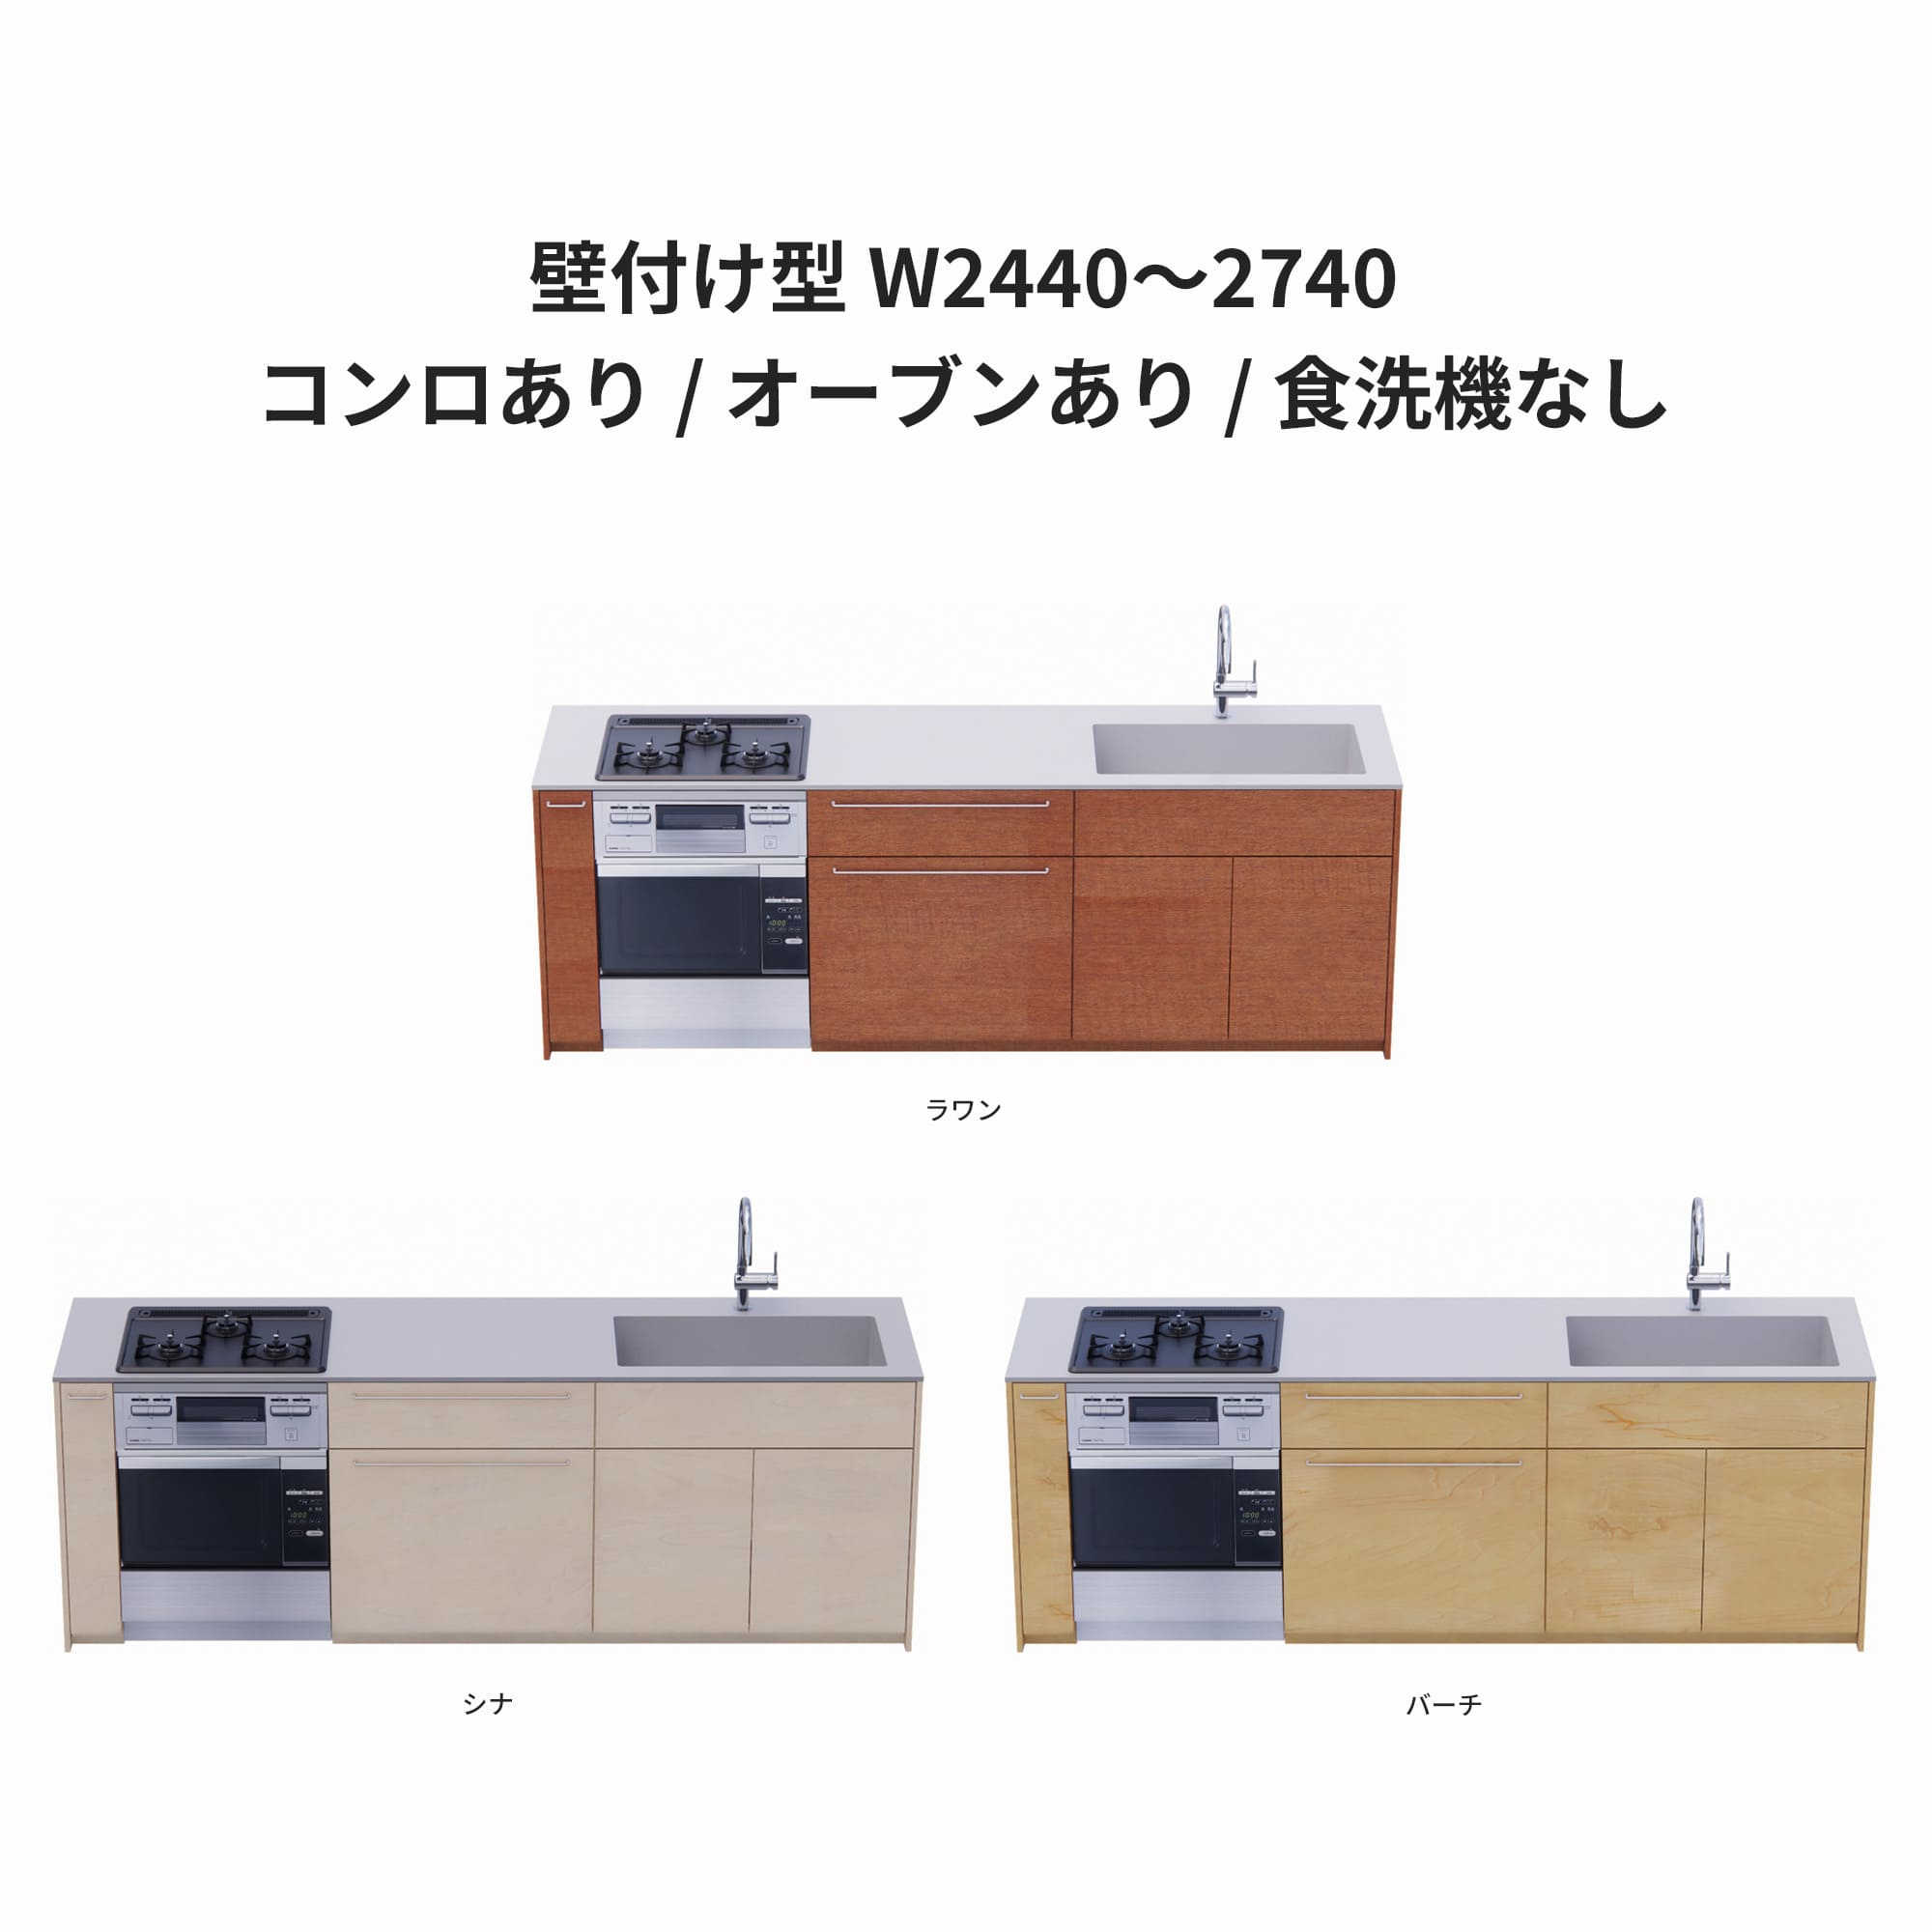 木製システムキッチン 壁付け型 W2440～2740・コンロあり / オーブンあり / 食洗機なし KB-KC022-25-G183 ラワン・シナ・バーチが選択できます